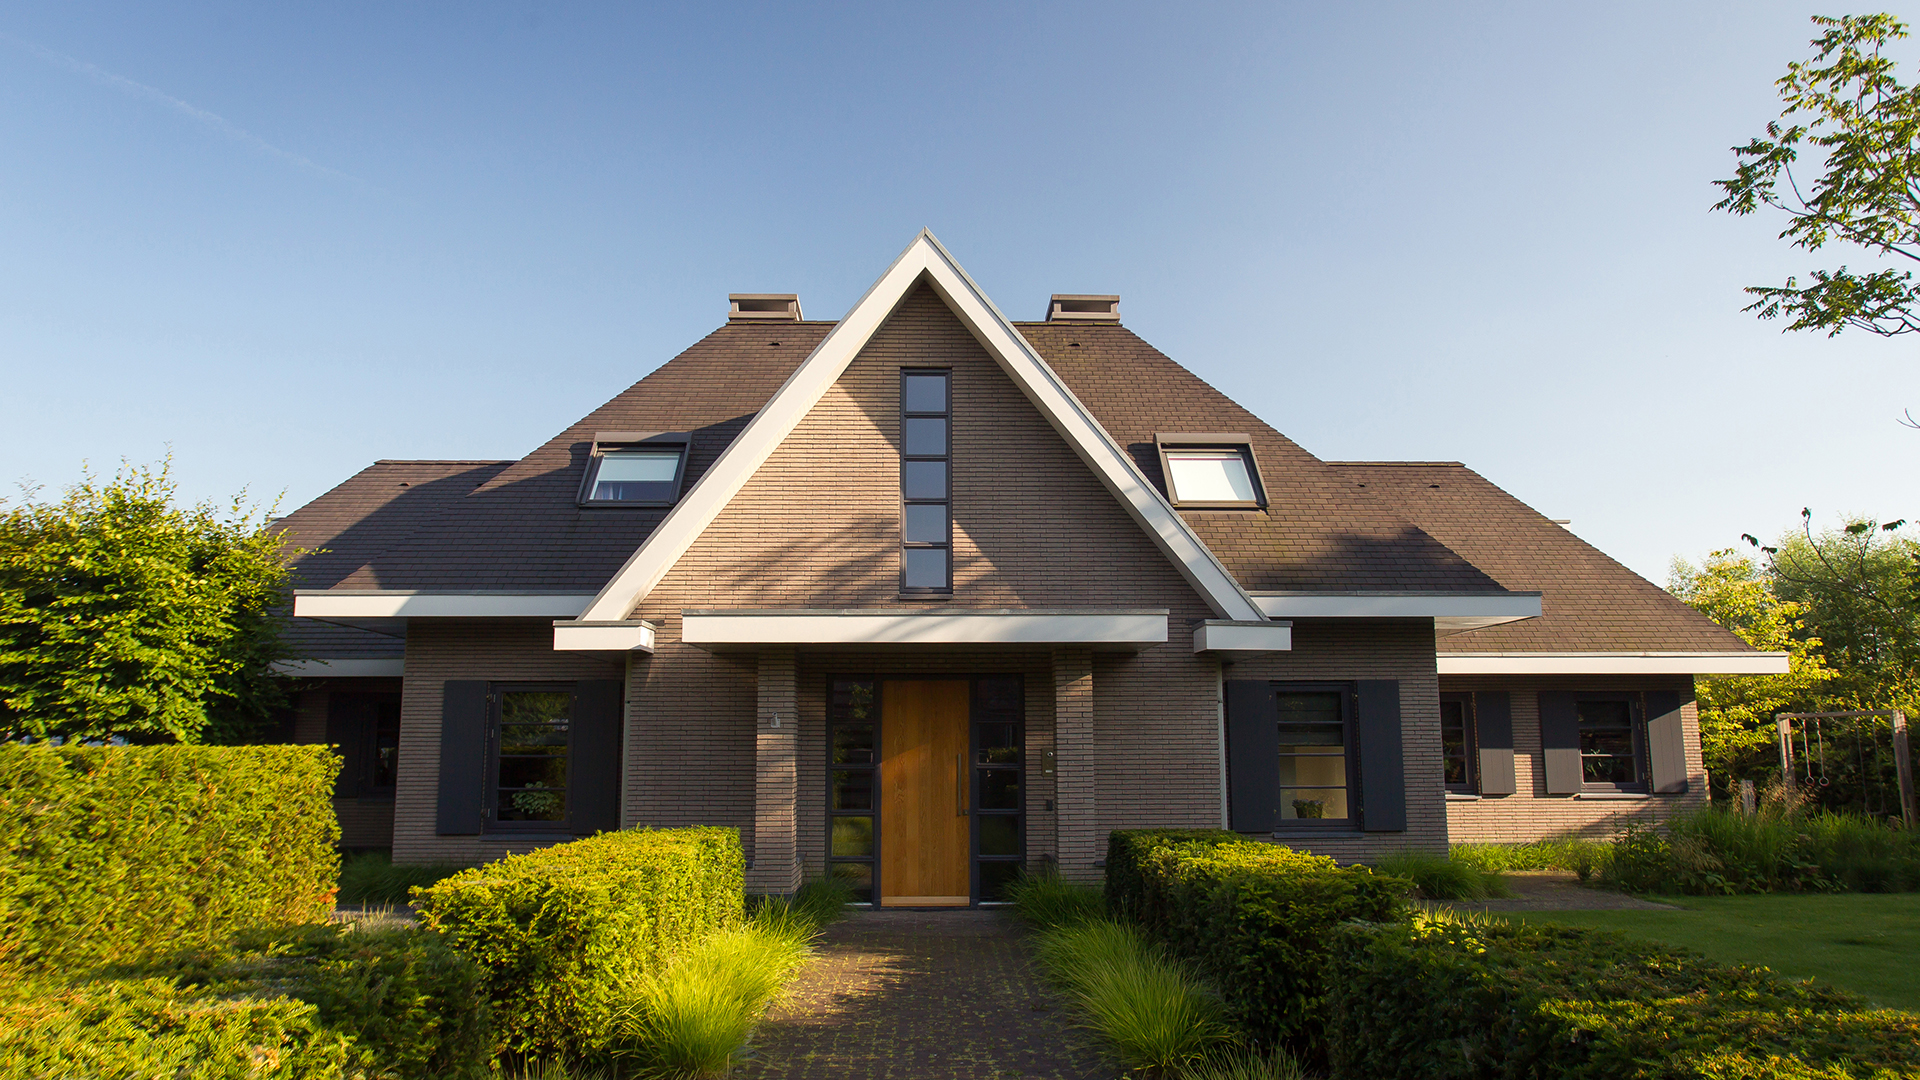 Ontwerp vrijstaand huis van RAAD Architecten. Voorzijde is volledig symmetrisch.